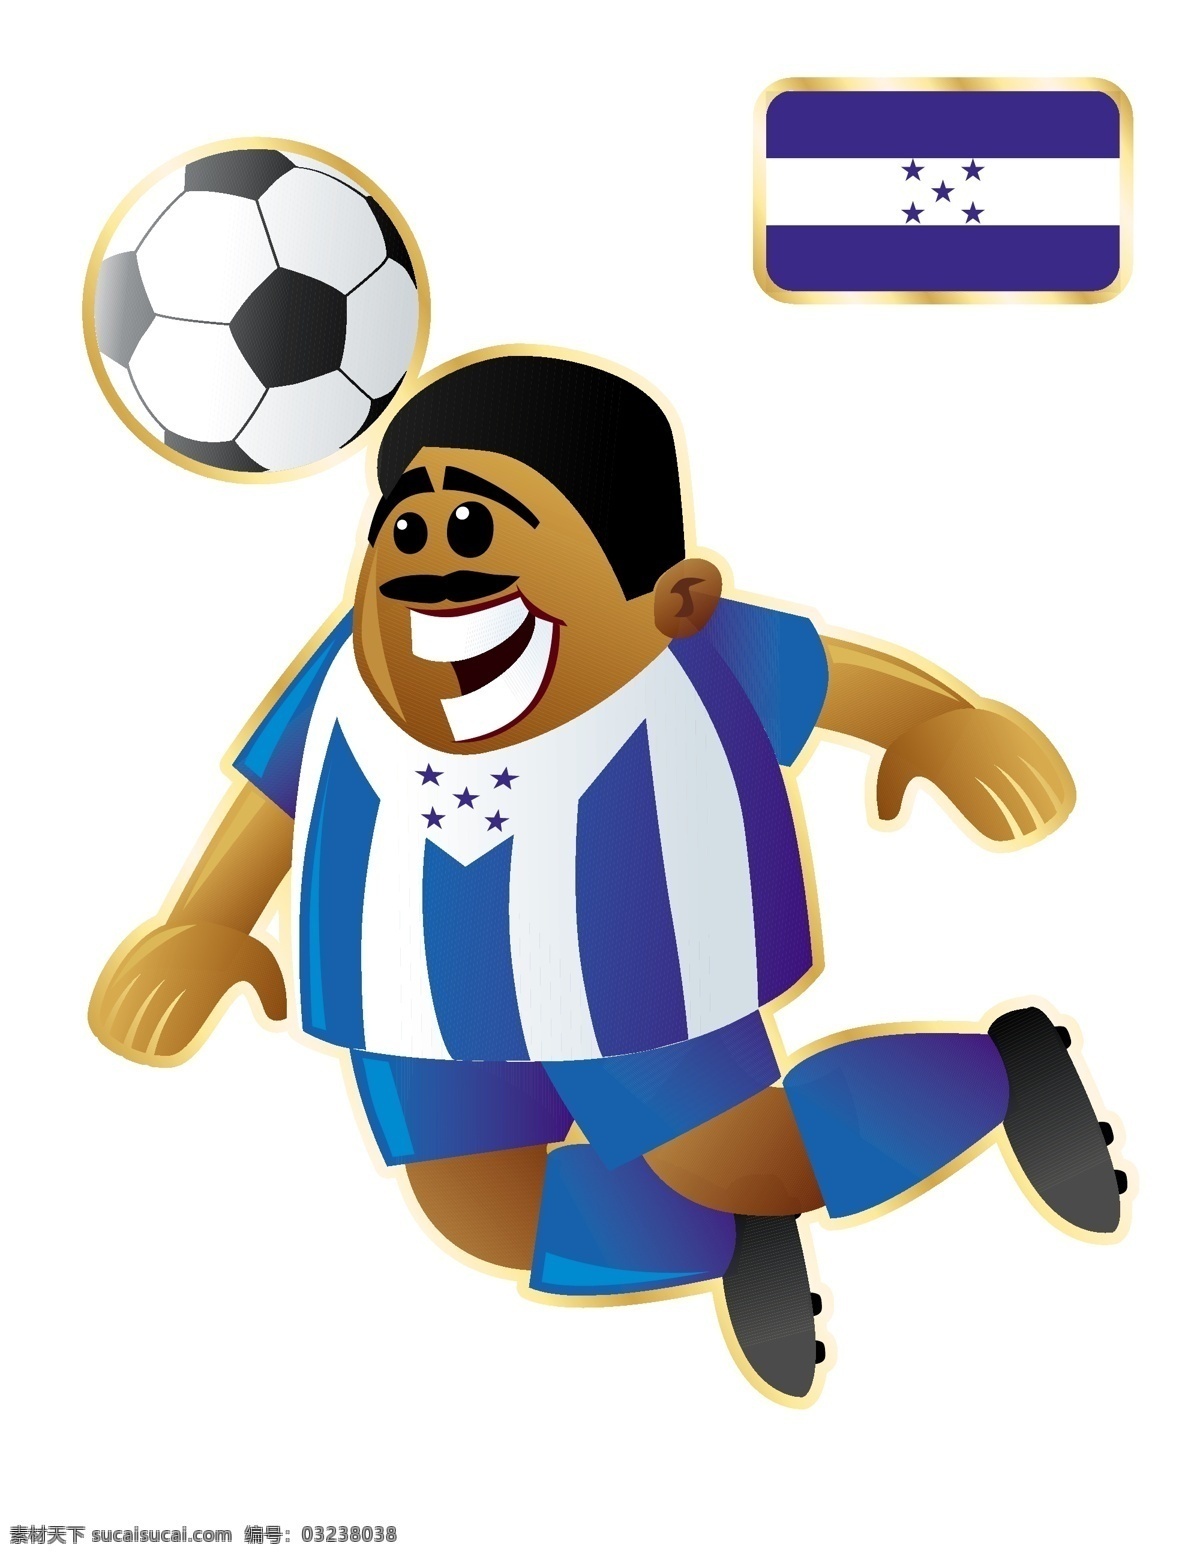 开心 国家 足球 卡通 人物 形象 矢量图 运动员 大胖子 运动 踢球 外国 矢量 扁平化 平面